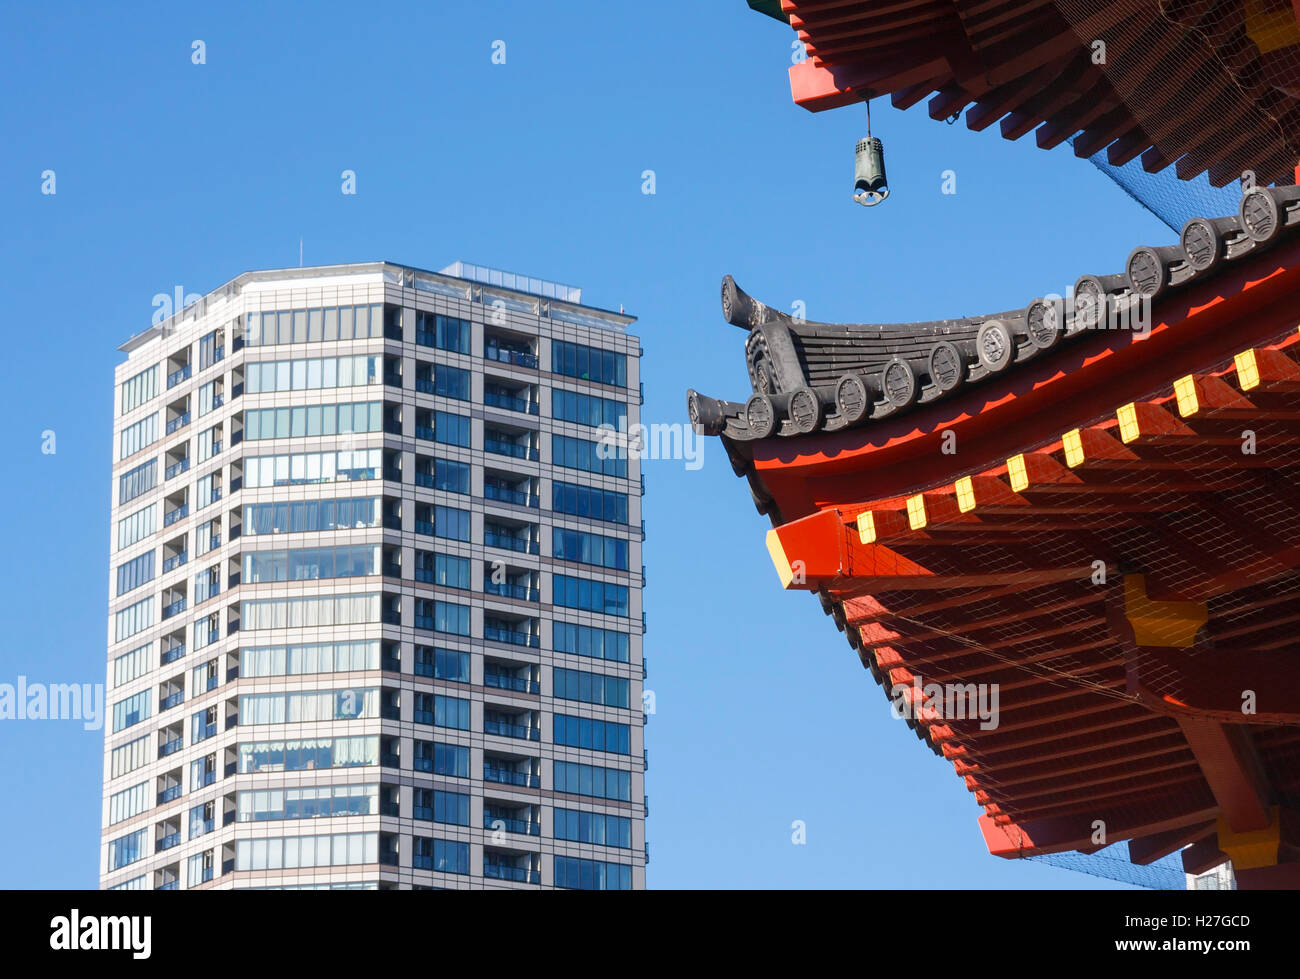 Lo stile tradizionale del tempio giapponese è in contrasto con la moderna architettura del grattacielo. Tokyo, Giappone. Foto Stock